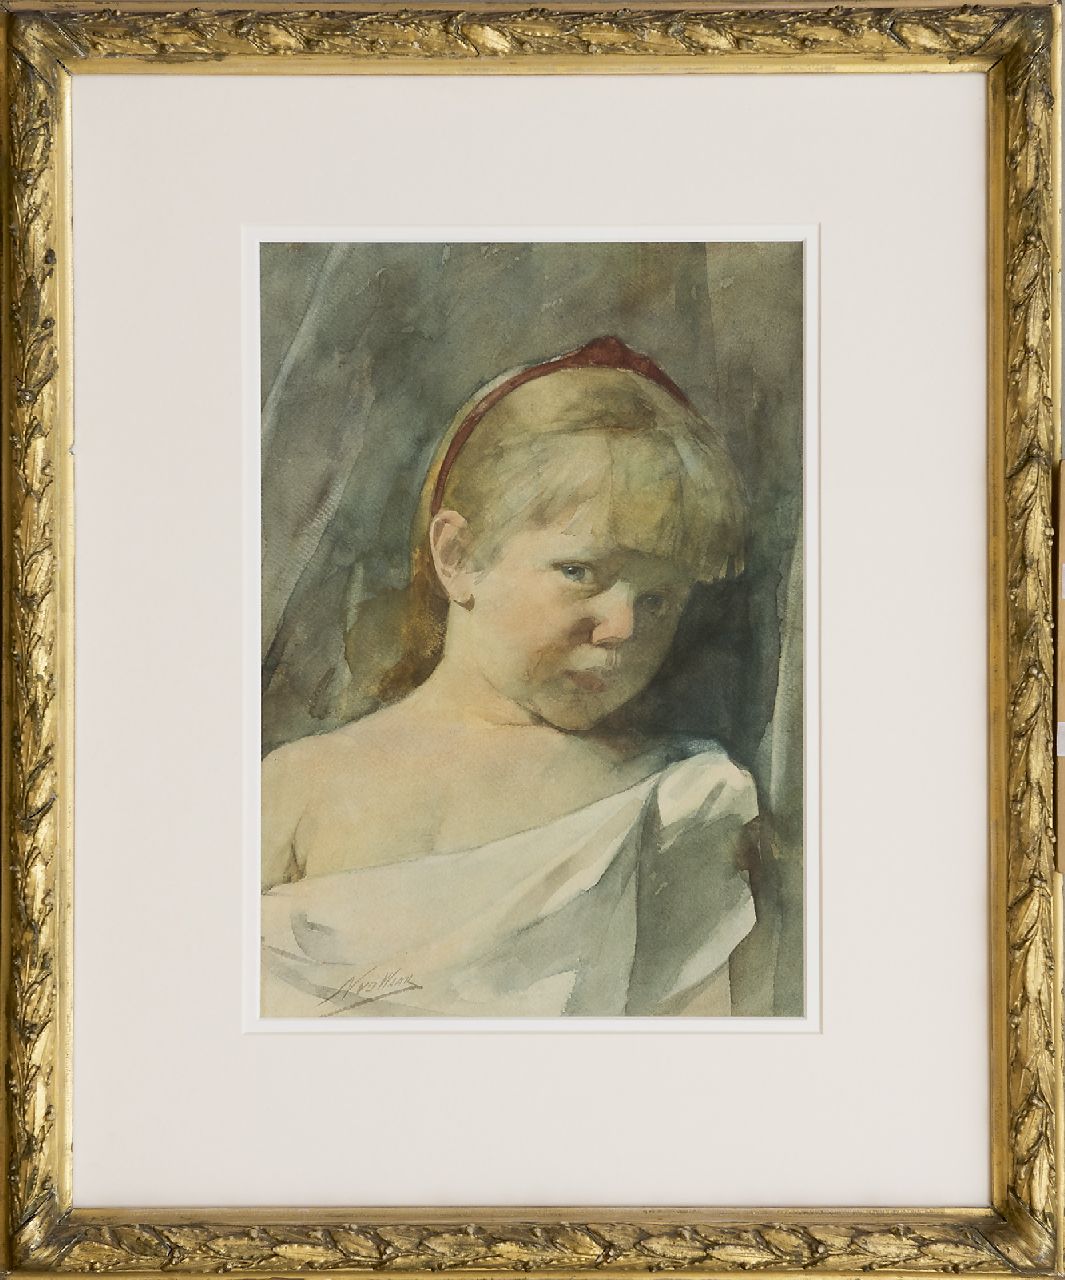 Waay N. van der | Nicolaas van der Waay | Aquarellen en tekeningen te koop aangeboden | Meisjesportret, aquarel op papier 49,5 x 34,3 cm, gesigneerd linksonder